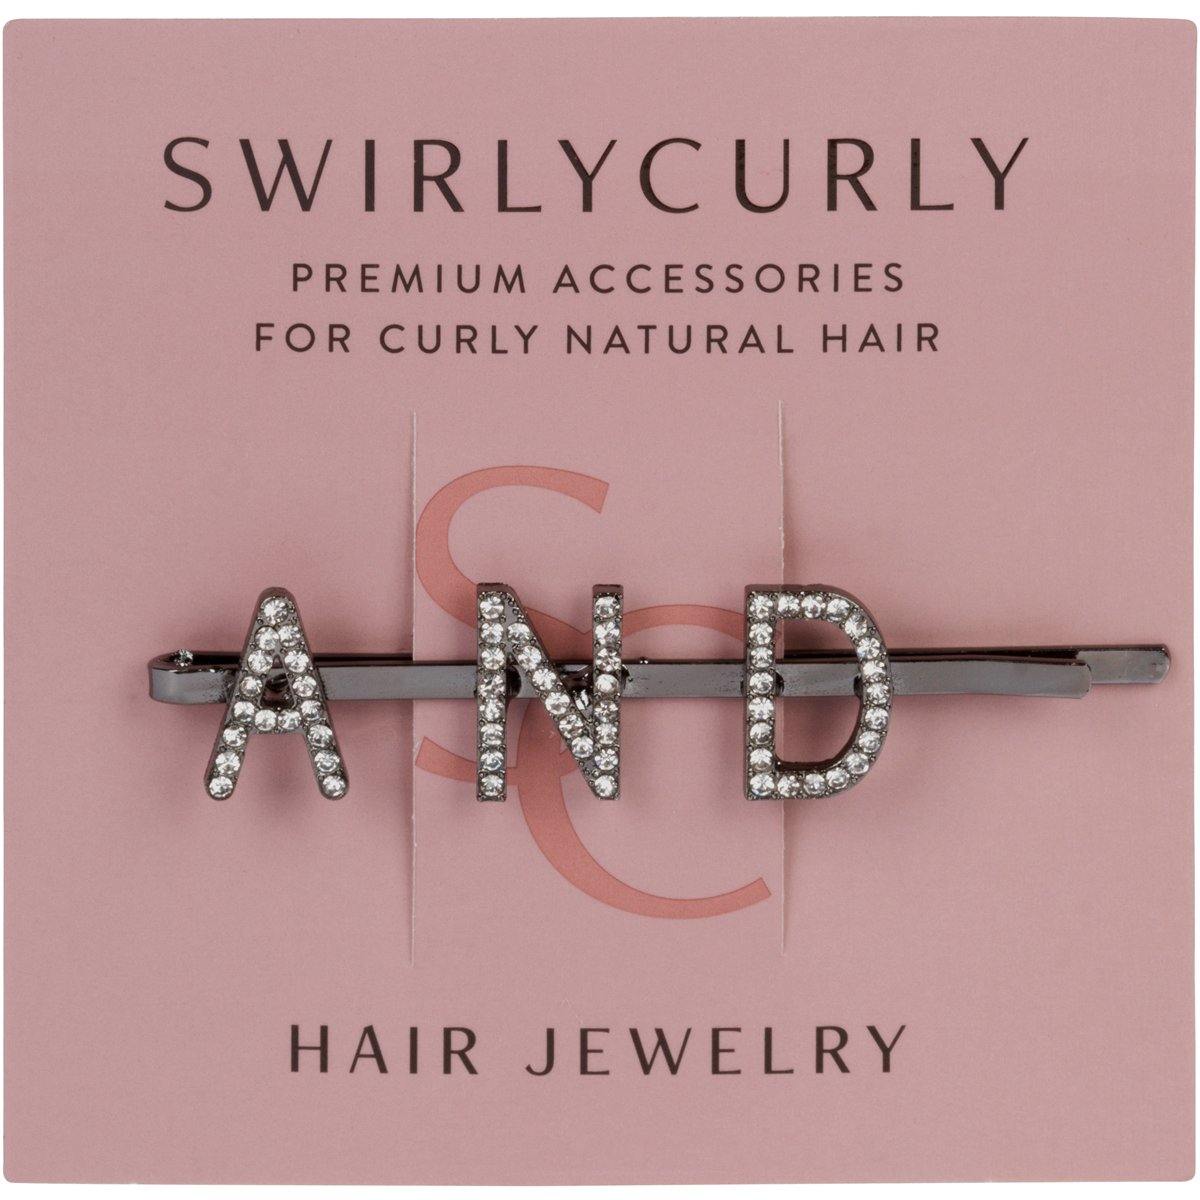 Hair Jewelry - SWIRLYCURLY